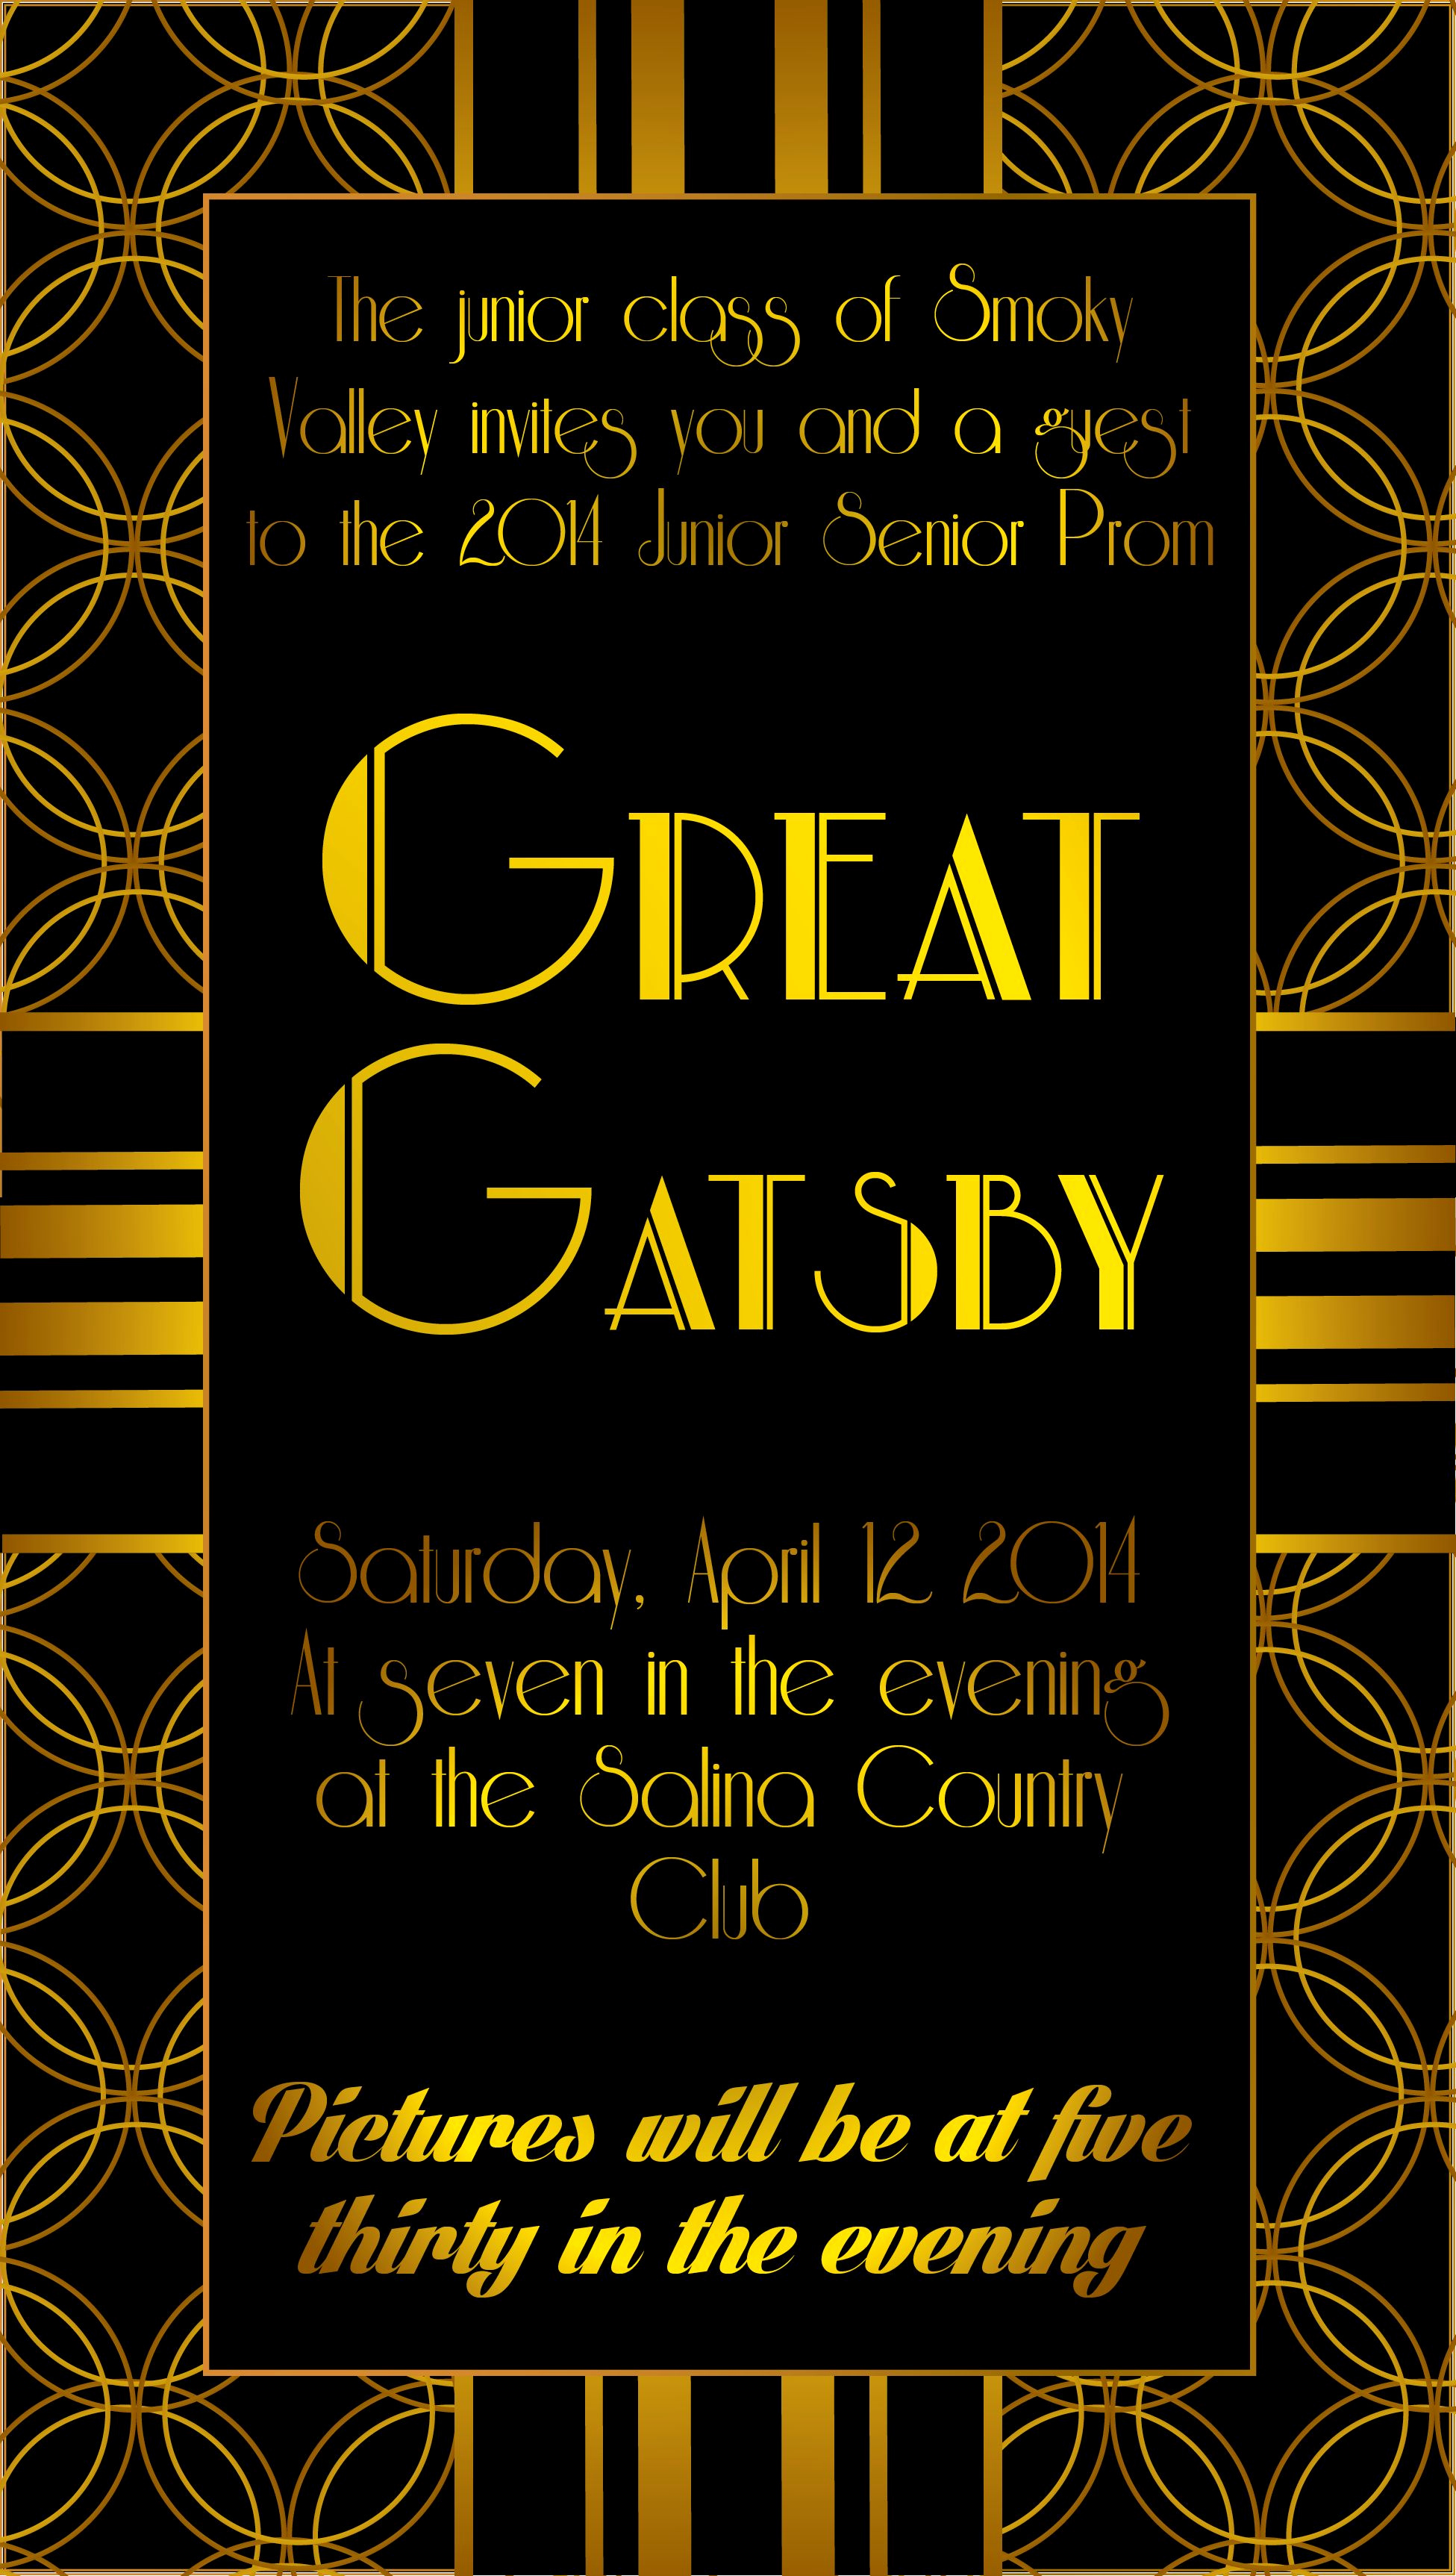 Great Gatsby Invitation Ideas Lovely Great Gatsby Prom Invitation Yaaaay